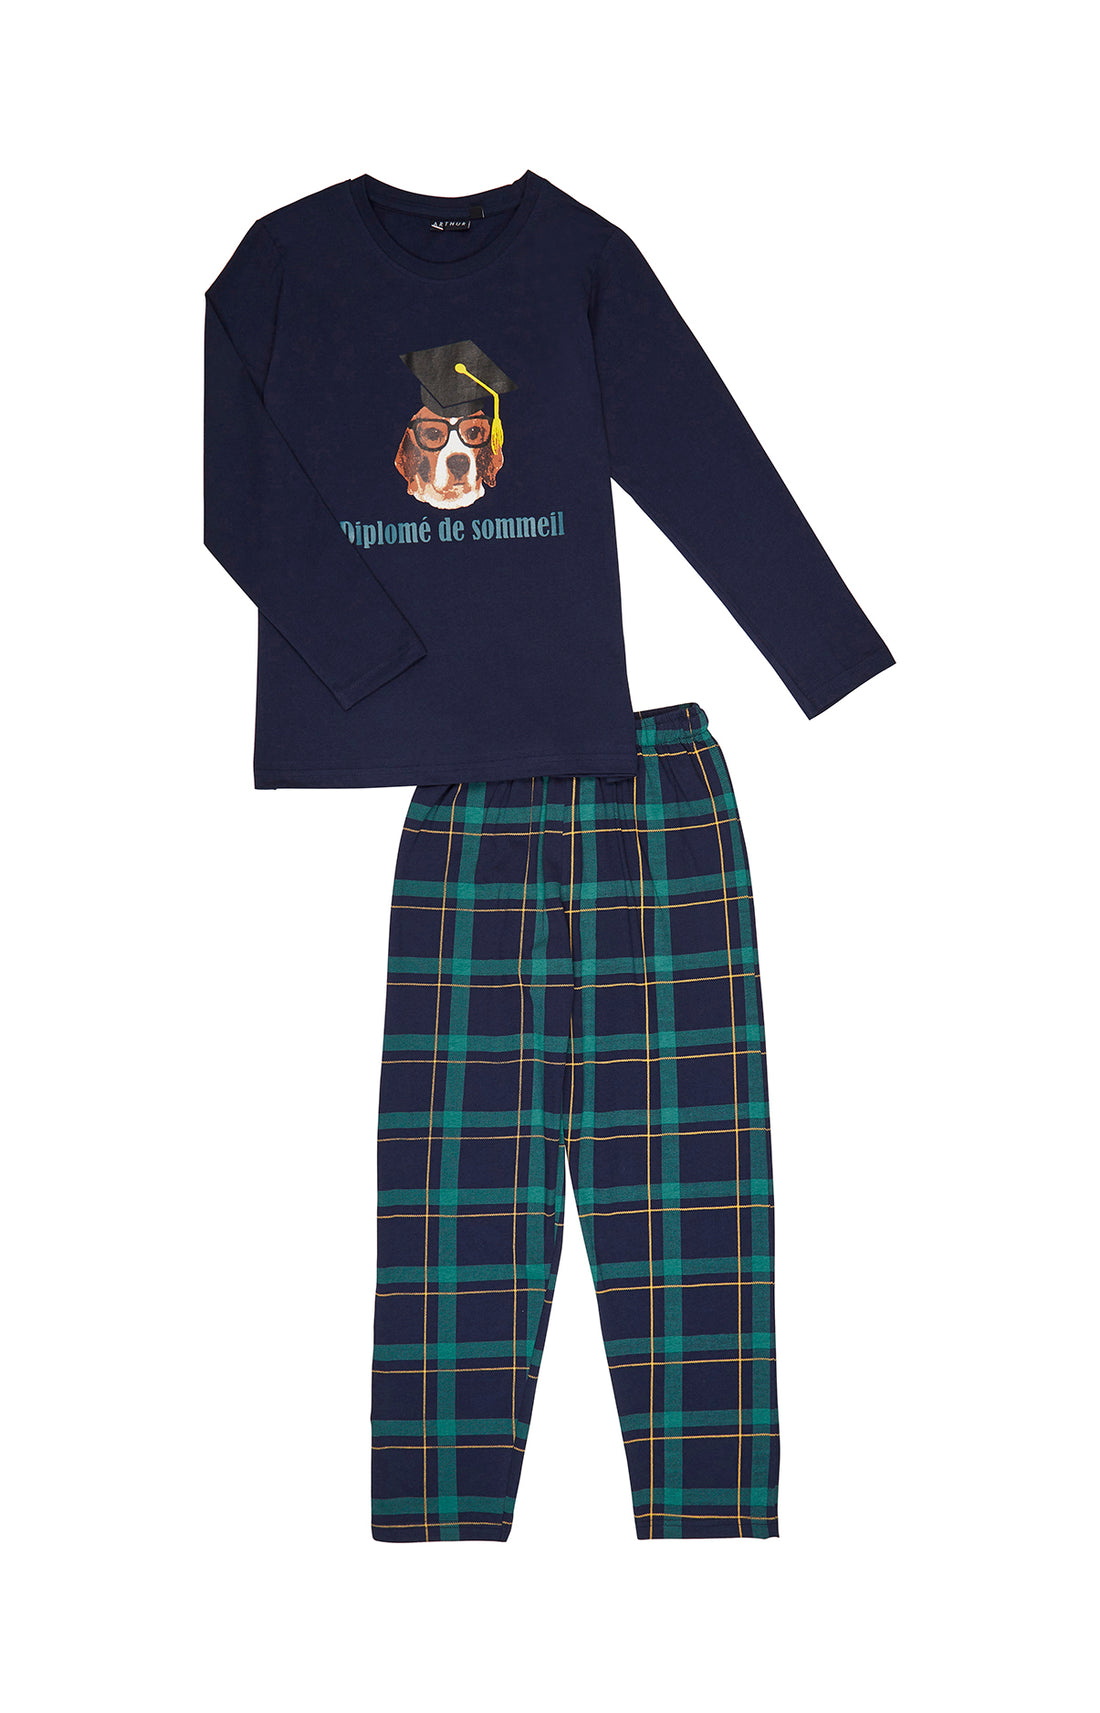 Pyjama - Diplomé de sommeil